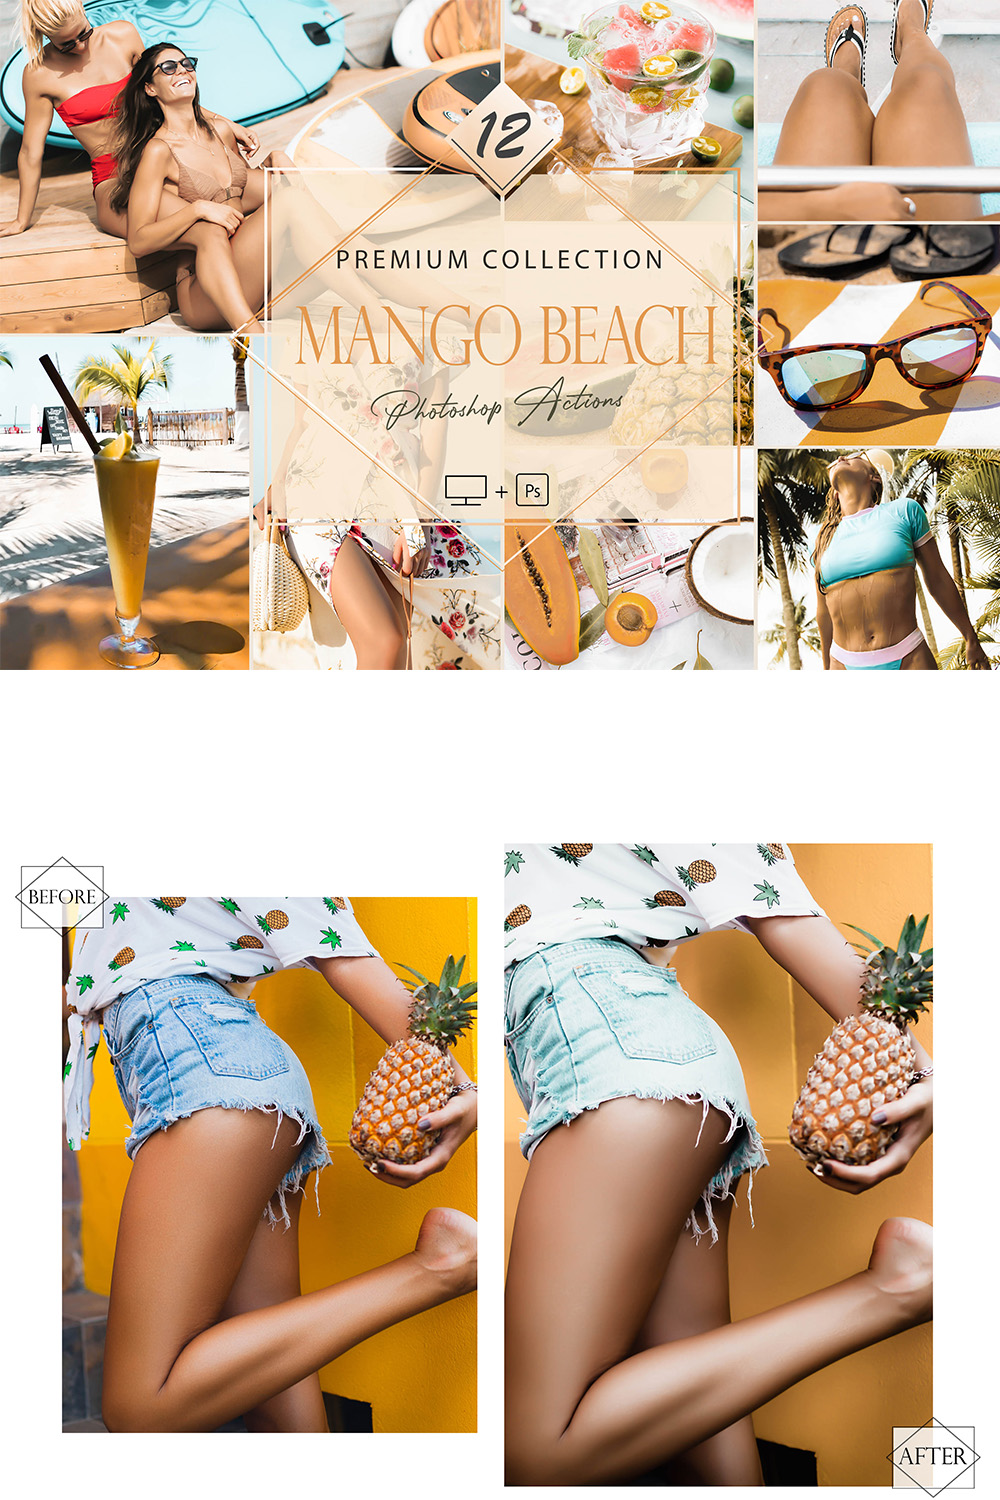 12 Photoshop Actions, Mango Beach Ps Action, Aqua Sea ACR Preset, Saturation Filter, Lifestyle Theme For Instagram, Tropical, Bronze portrait pinterest preview image.